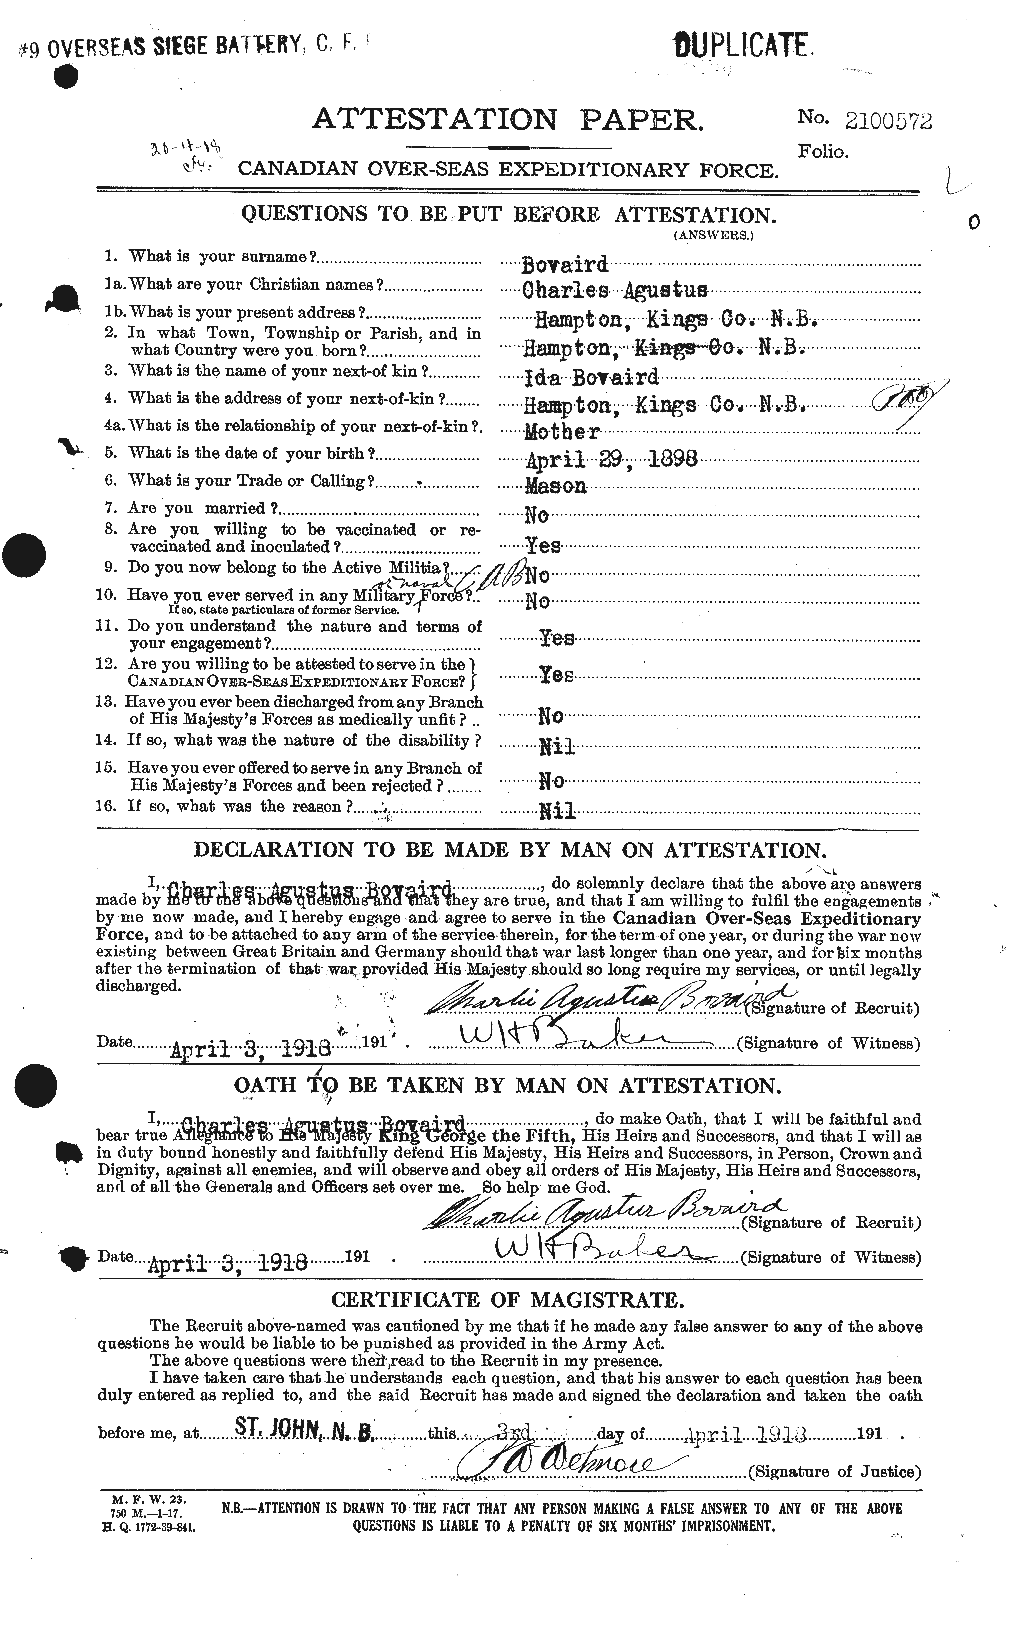 Dossiers du Personnel de la Première Guerre mondiale - CEC 254395a